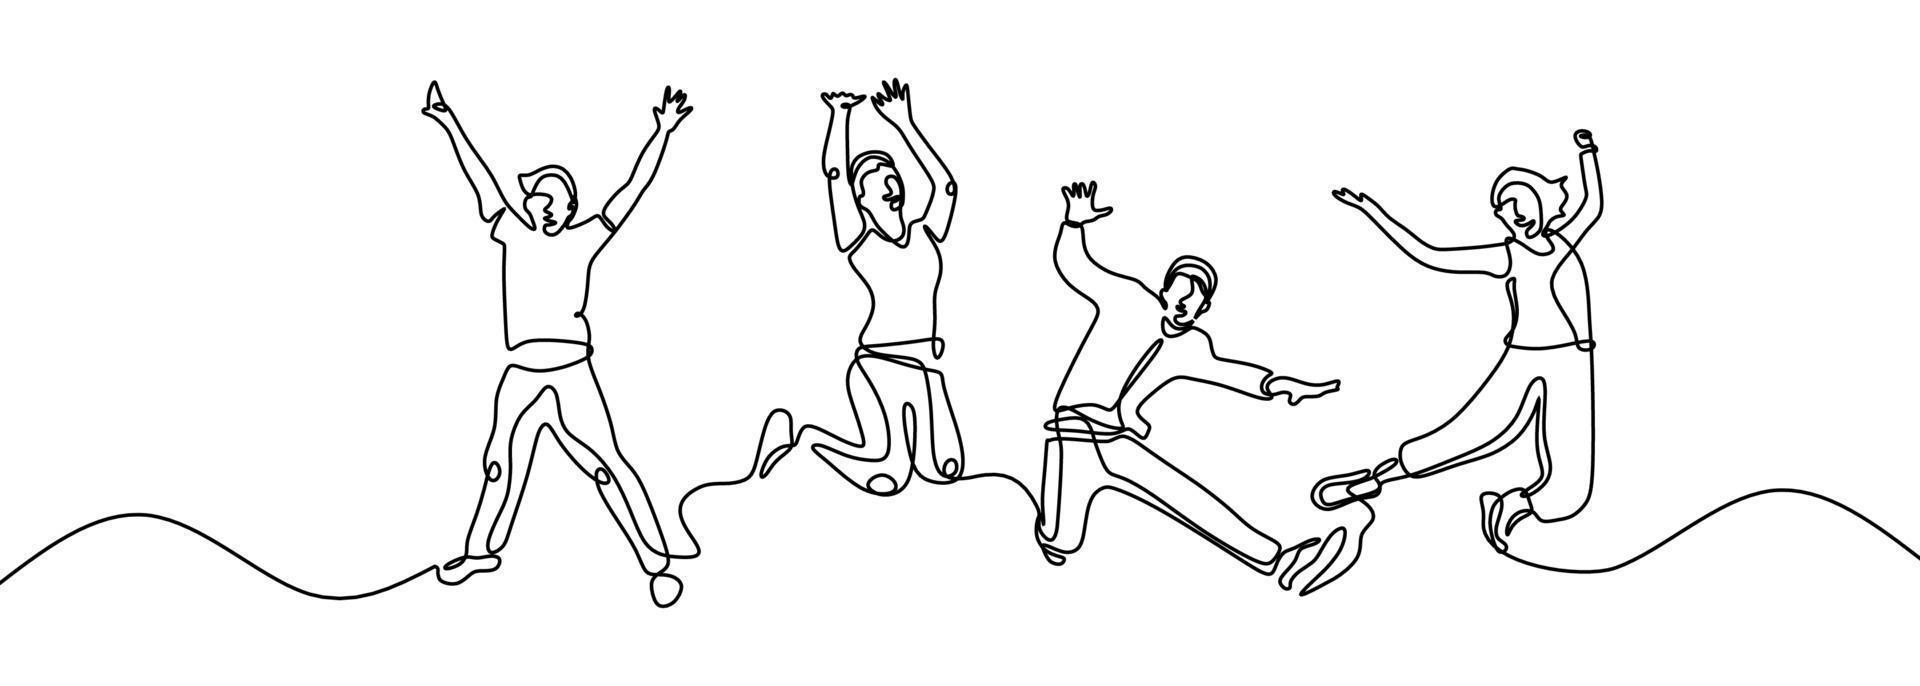 dibujo de línea continua de cuatro personas felices saltando. vector